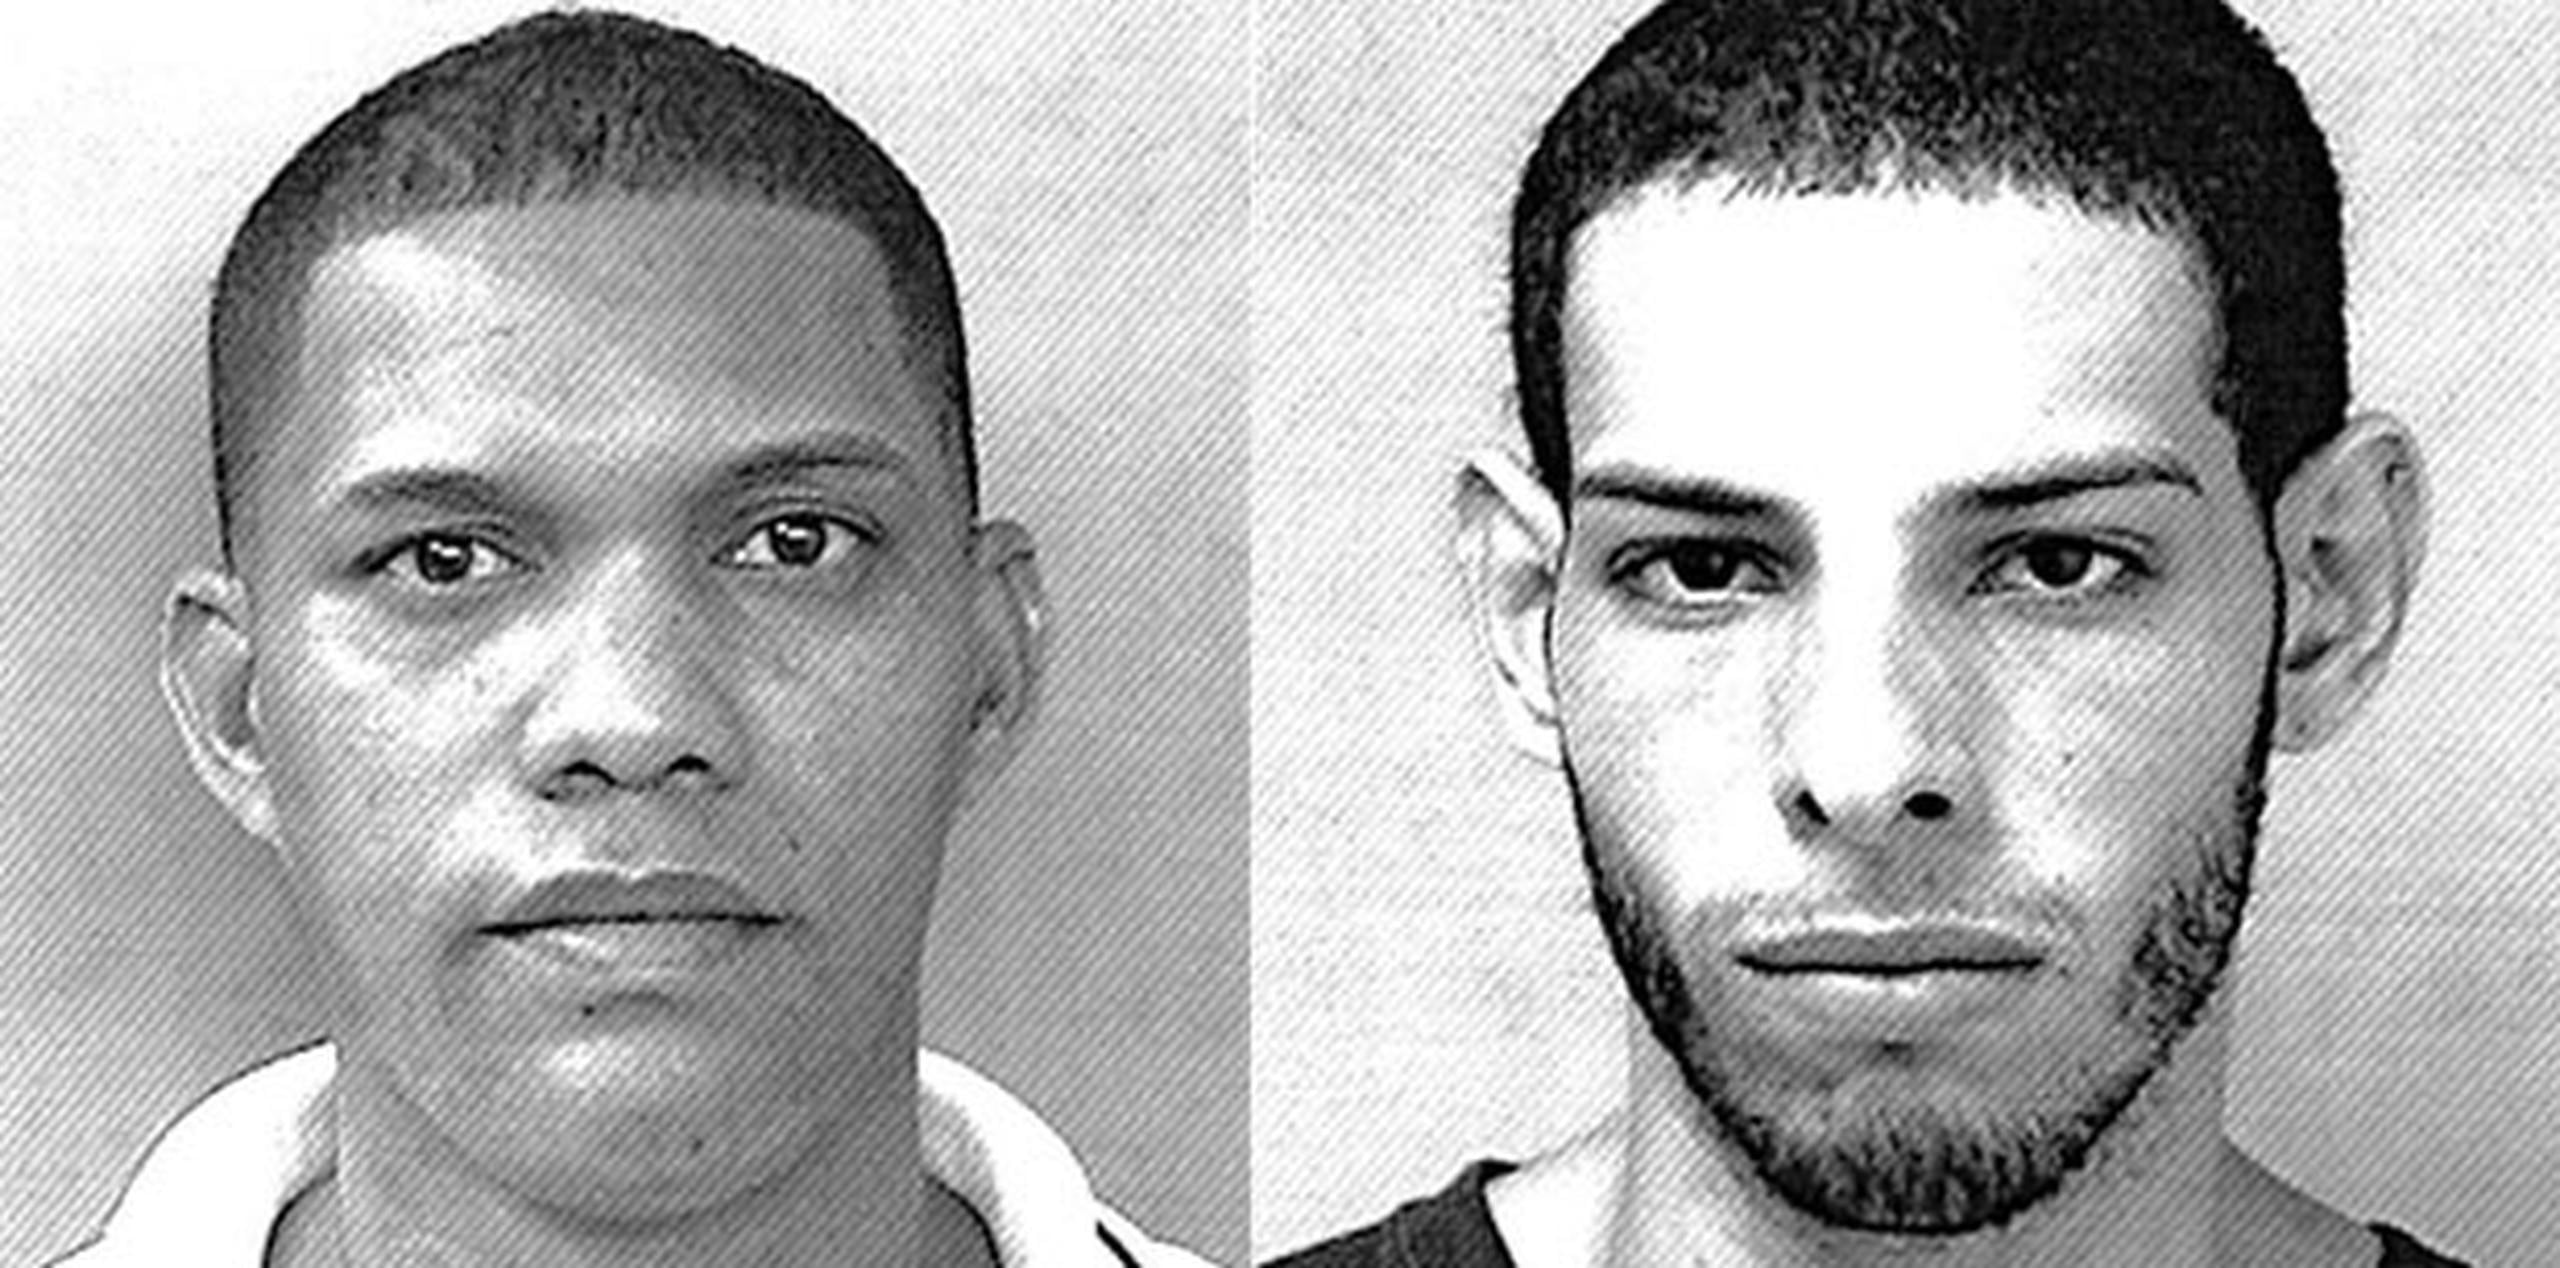 Francisco A. Cedeño Amparo, de 35 años, y Carlos F. Torres Cortés, de 22, escaparon tras atacar al oficial penal que los transportaba. (Suministrada)